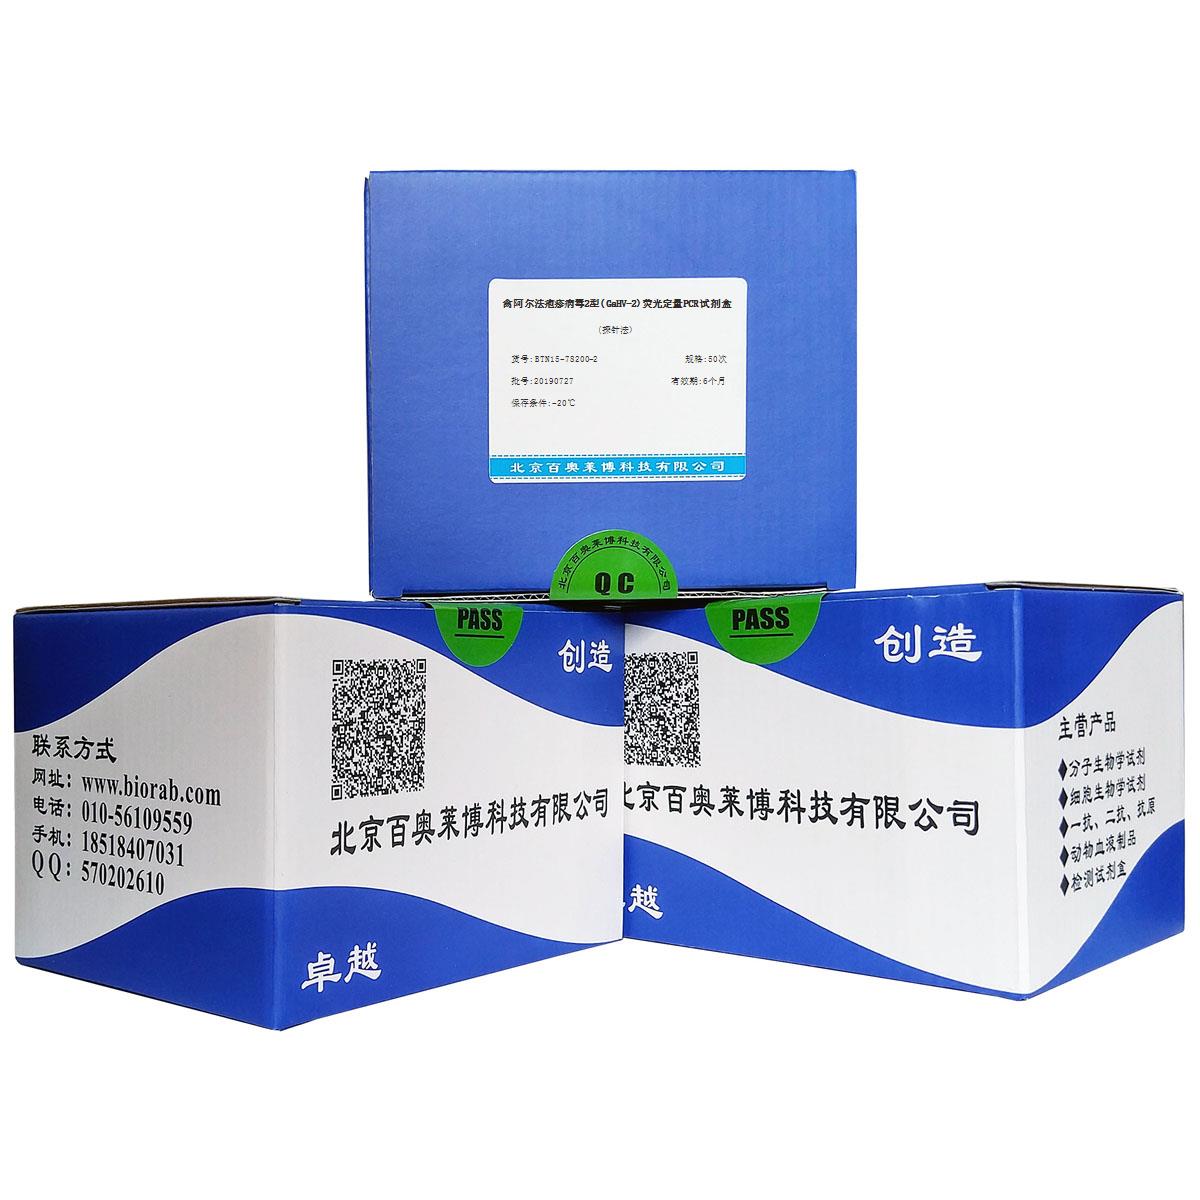 禽阿尔法疱疹病毒2型(GaHV-2)荧光定量PCR试剂盒(探针法)